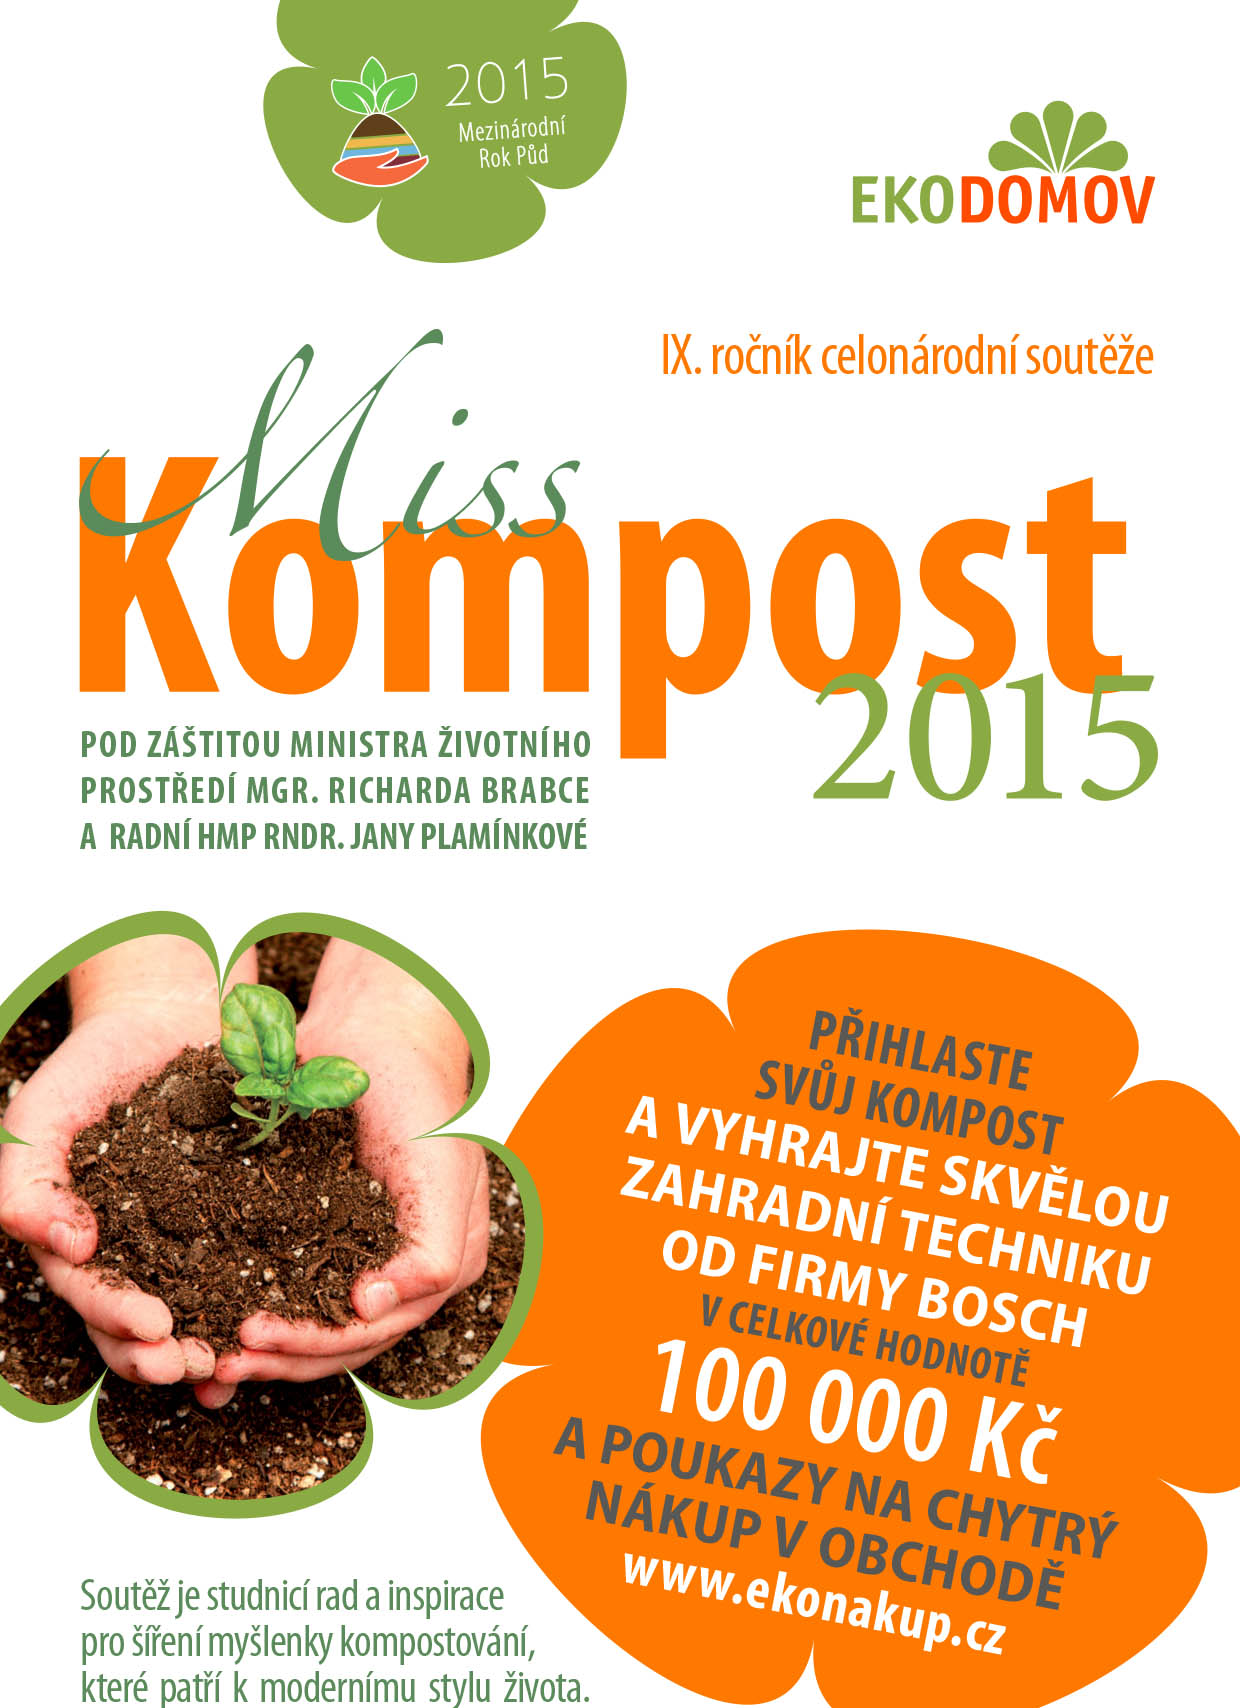 Miss Kompost 2015